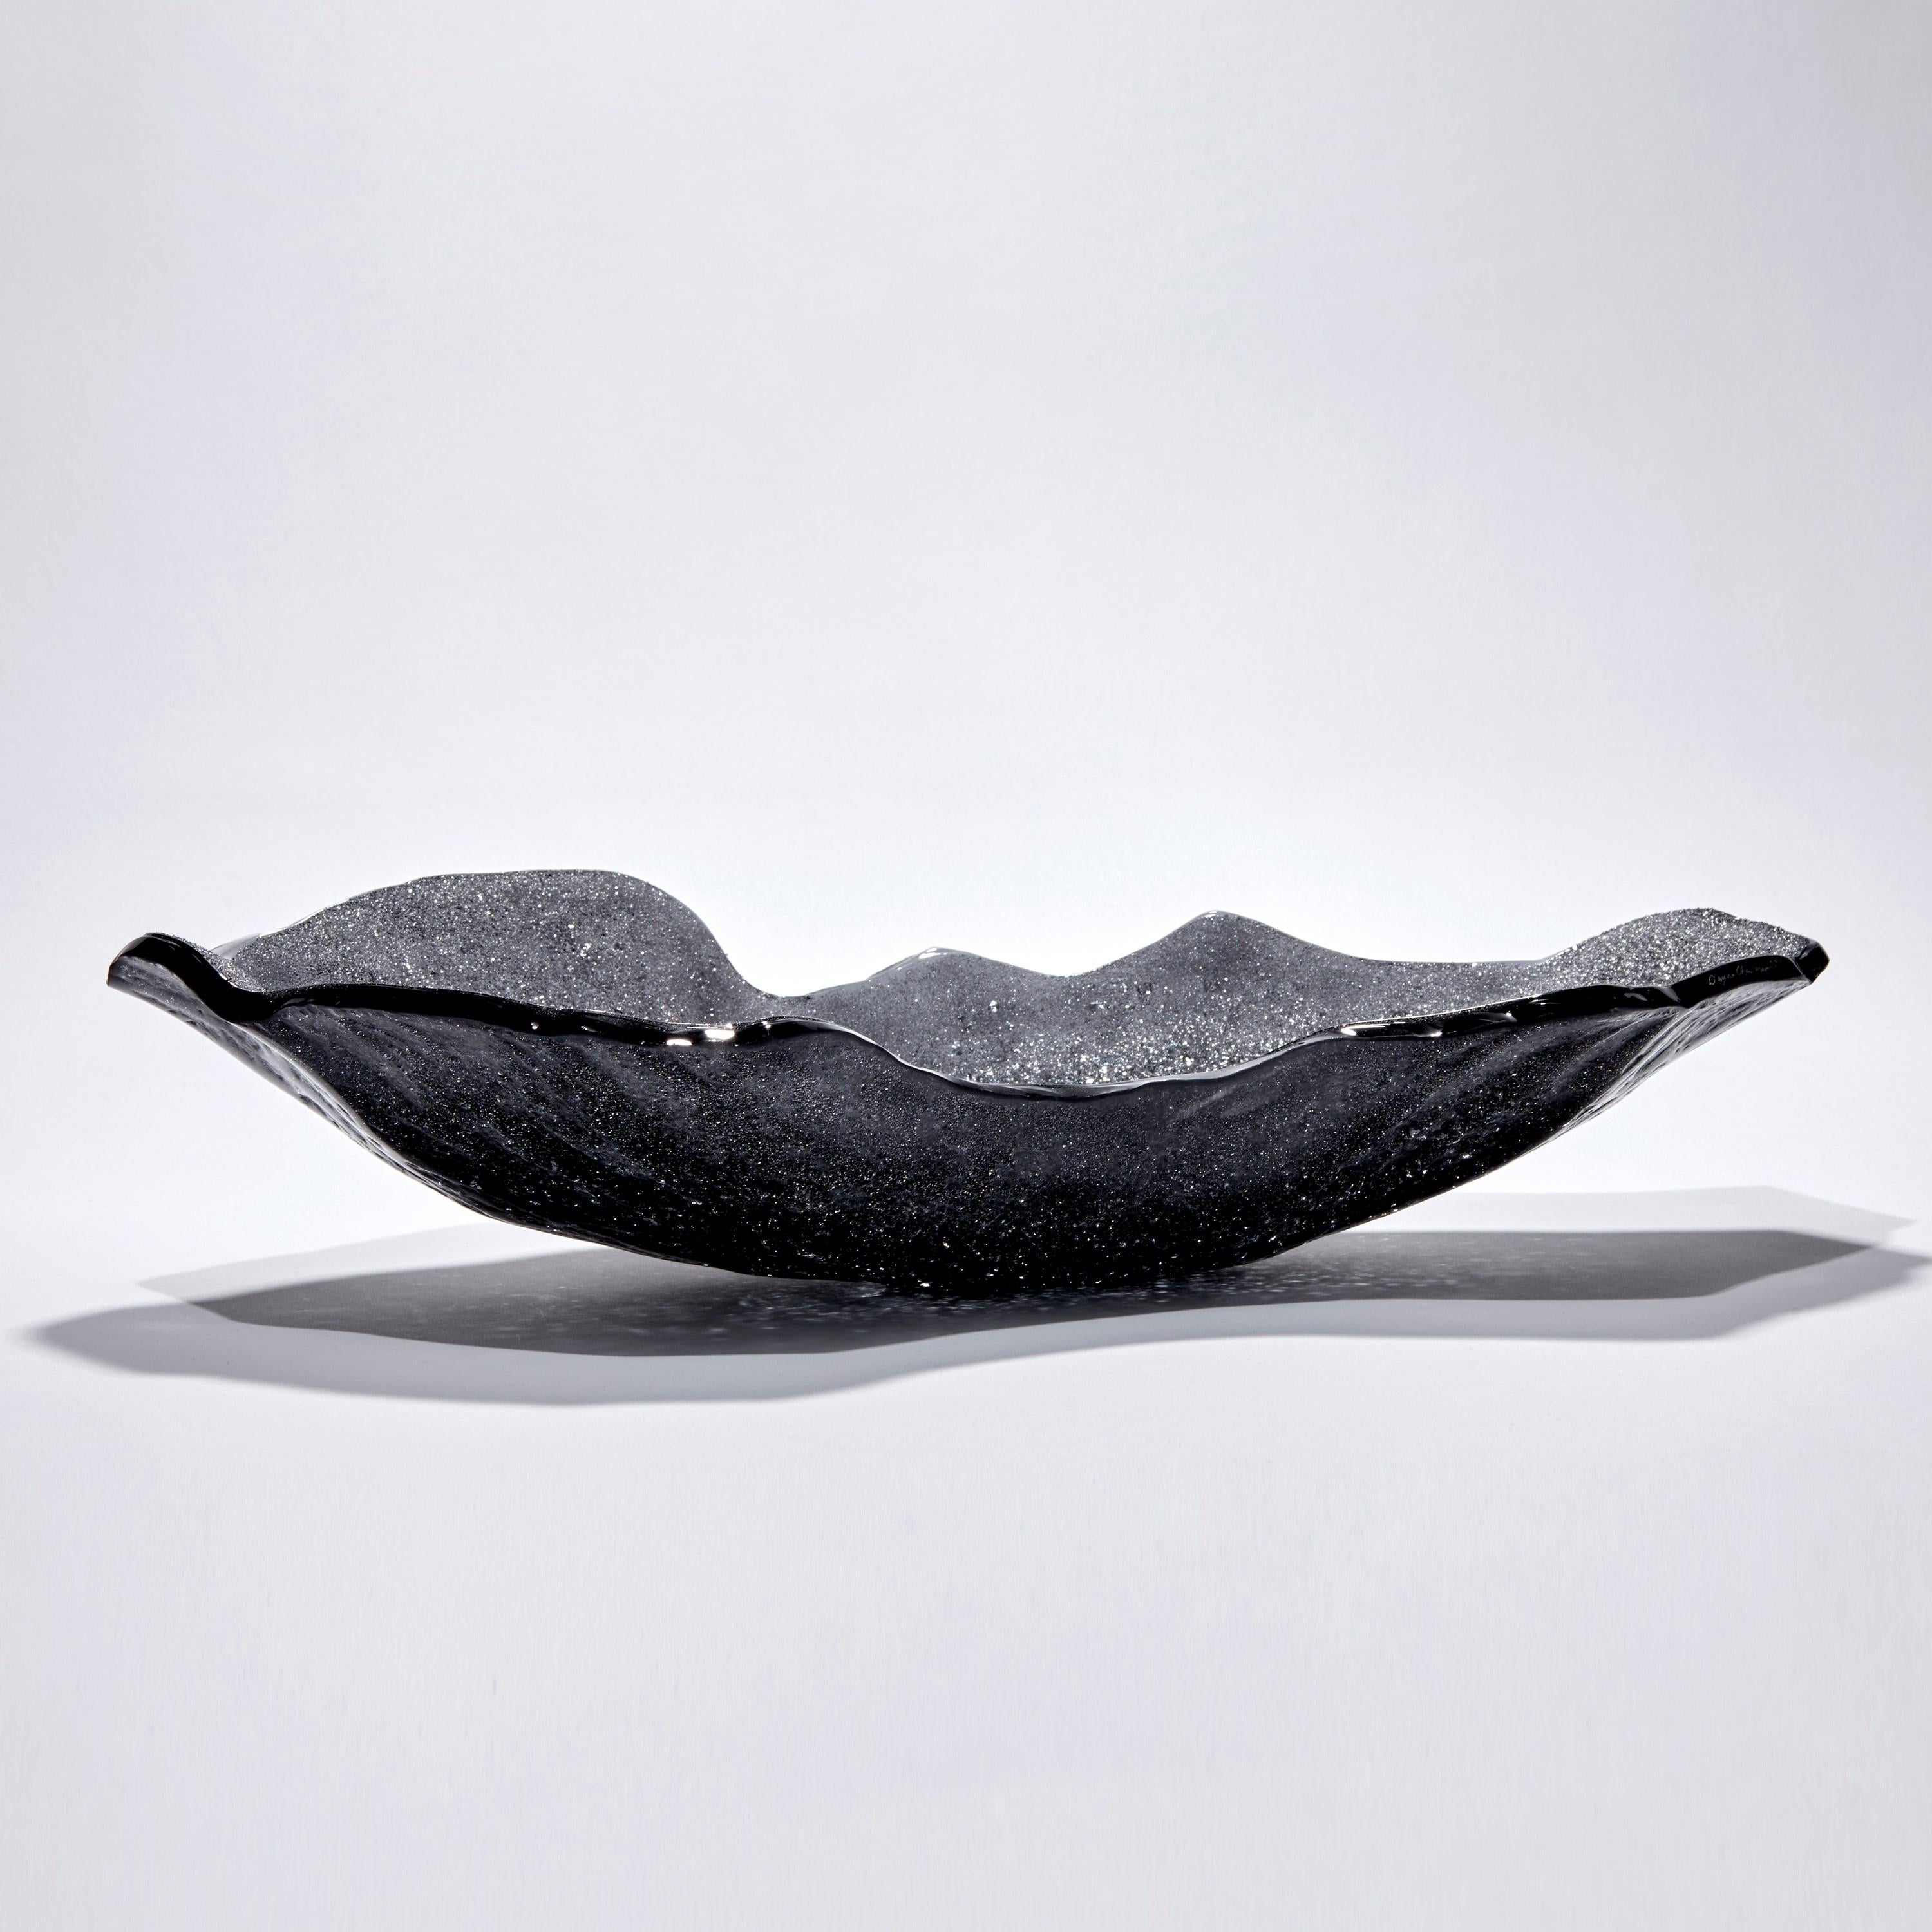 Organic Modern Celestine V, black & Grey Sparkly Glass Sculptural Centrepiece by Wayne Charmer